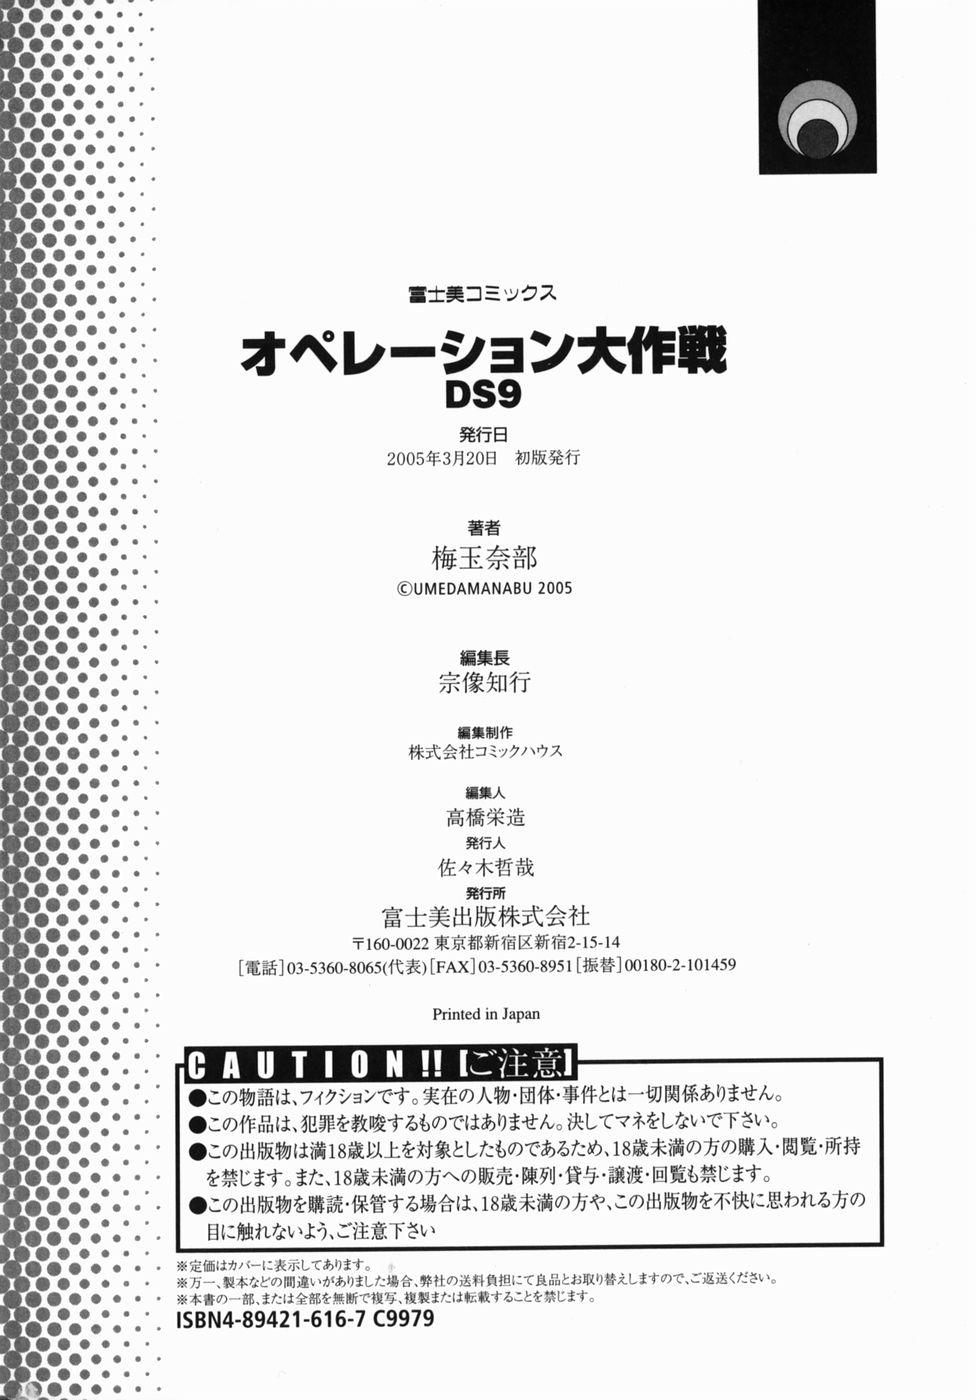 Operation Daisakusen DS9 183